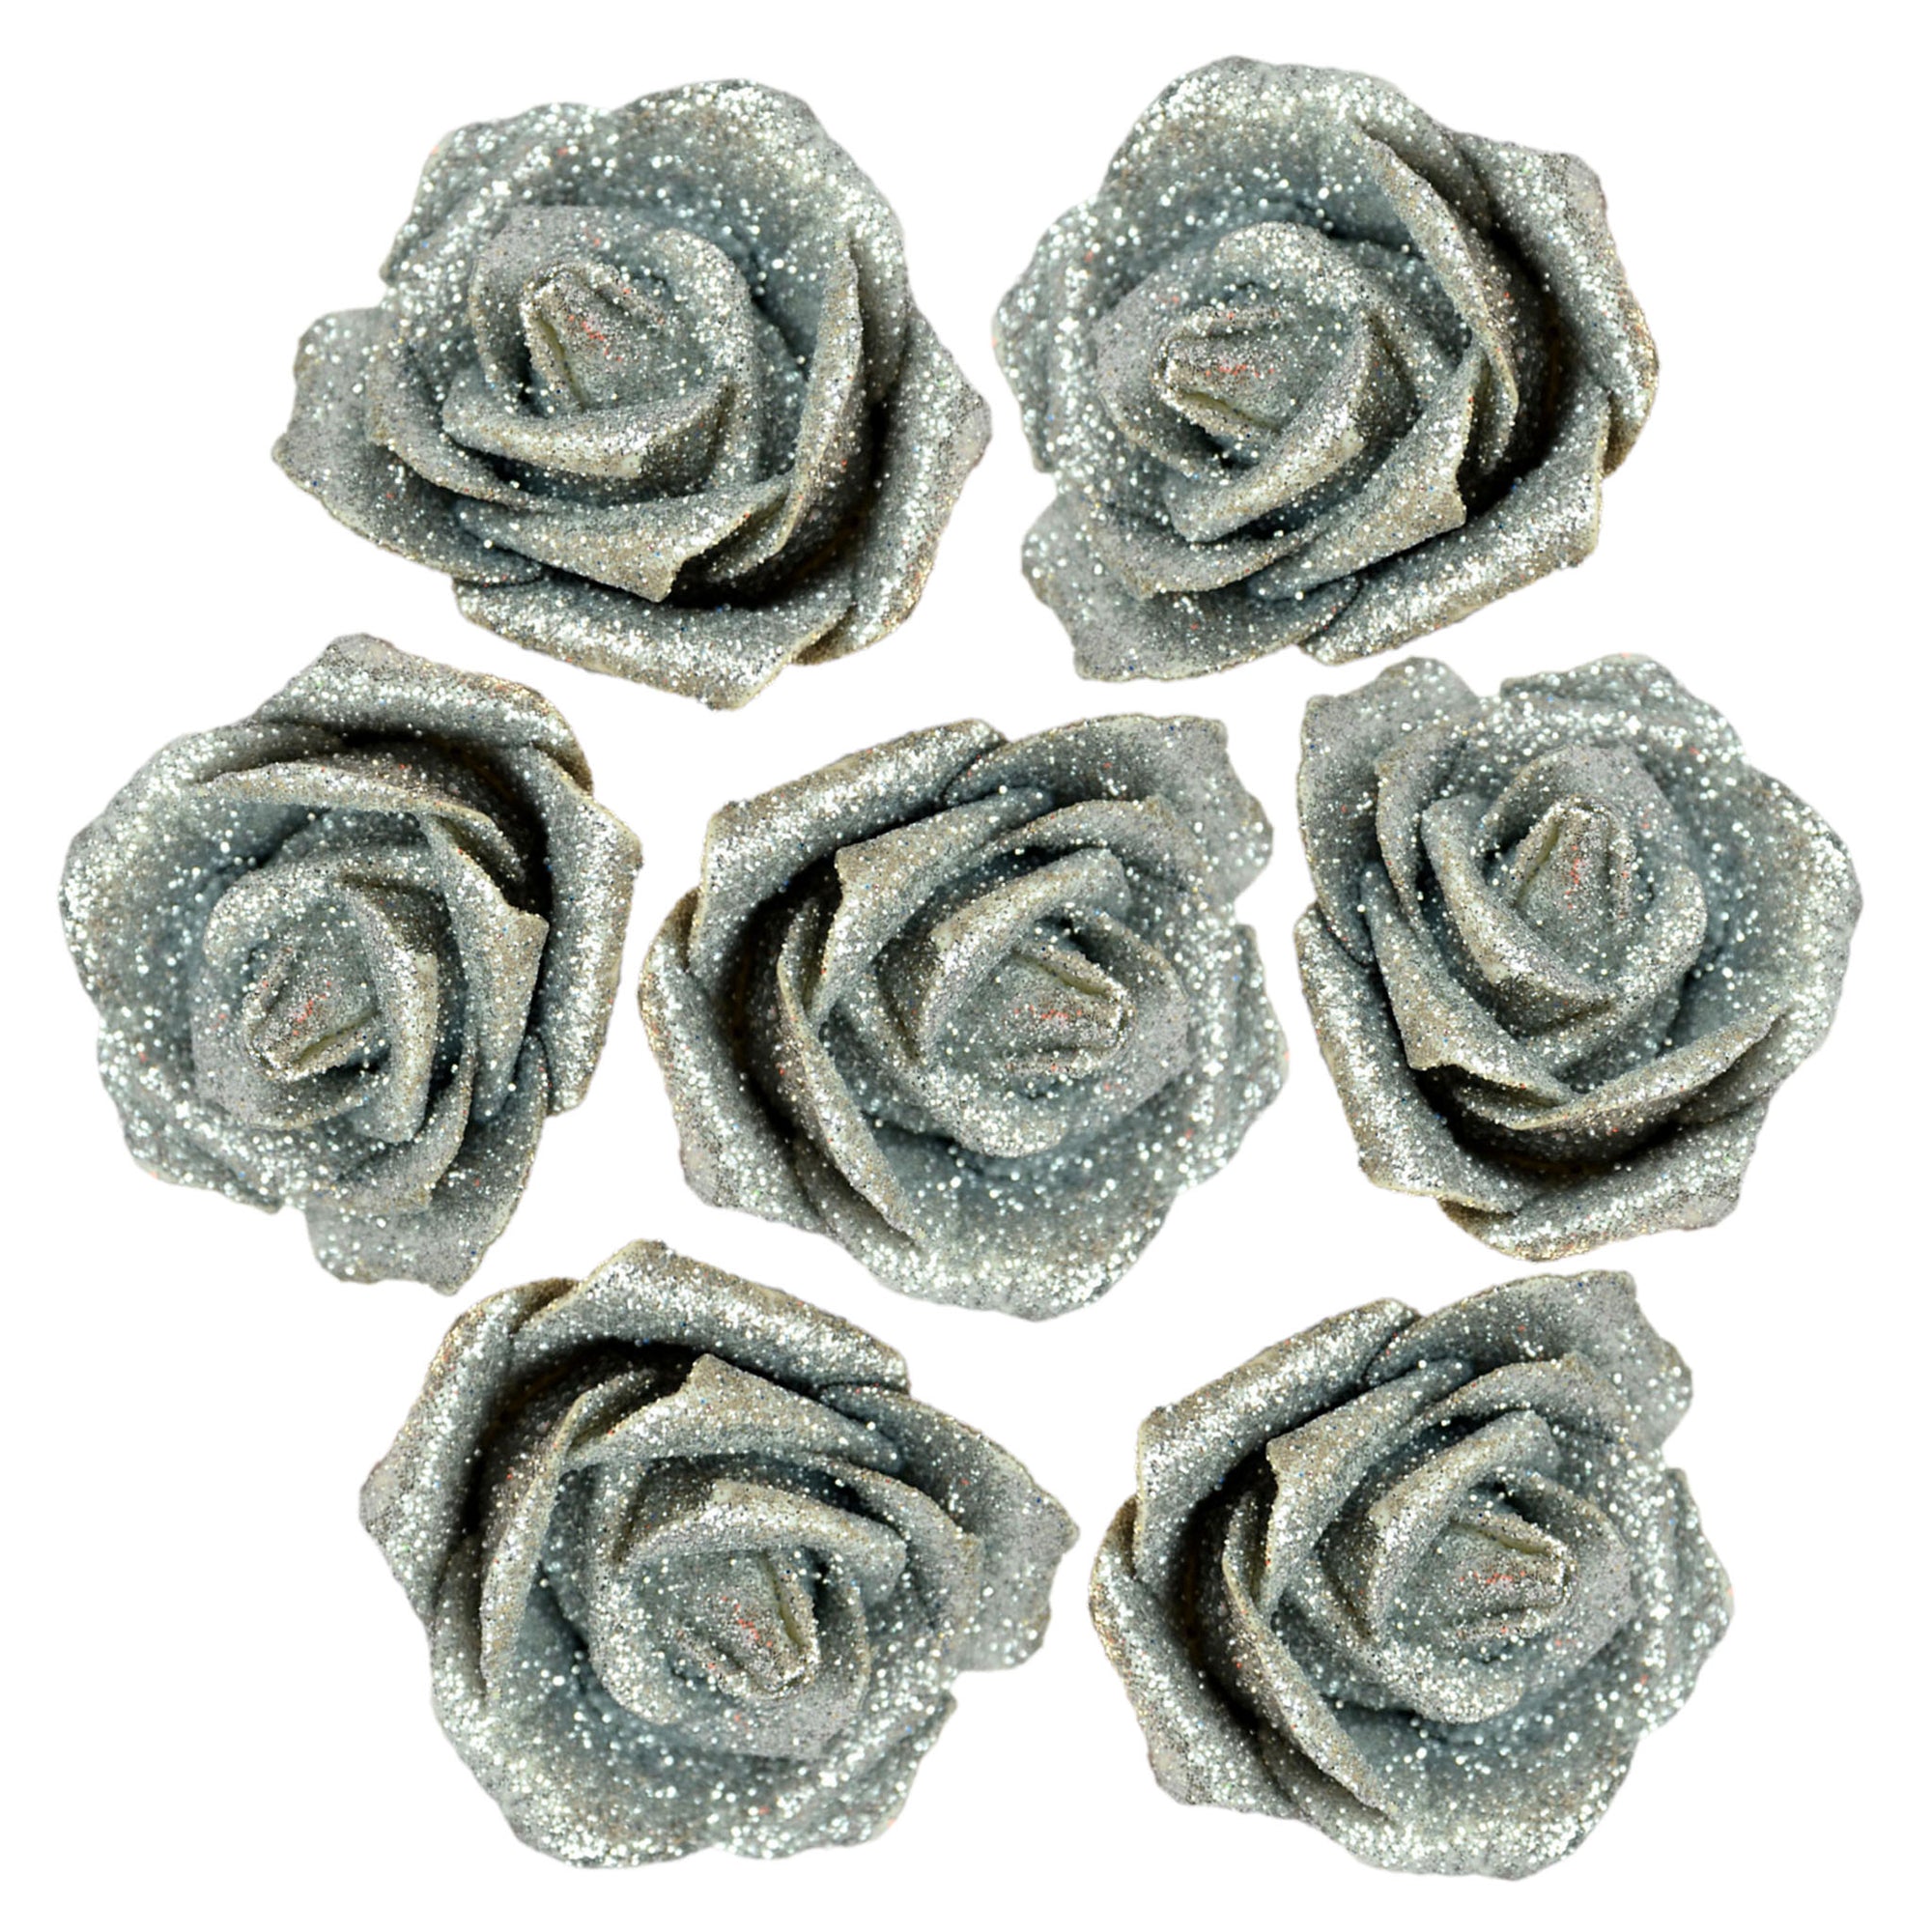 Glitter Flowers Artificial Rose Heads Glitter Wedding Flowers 100 Heads